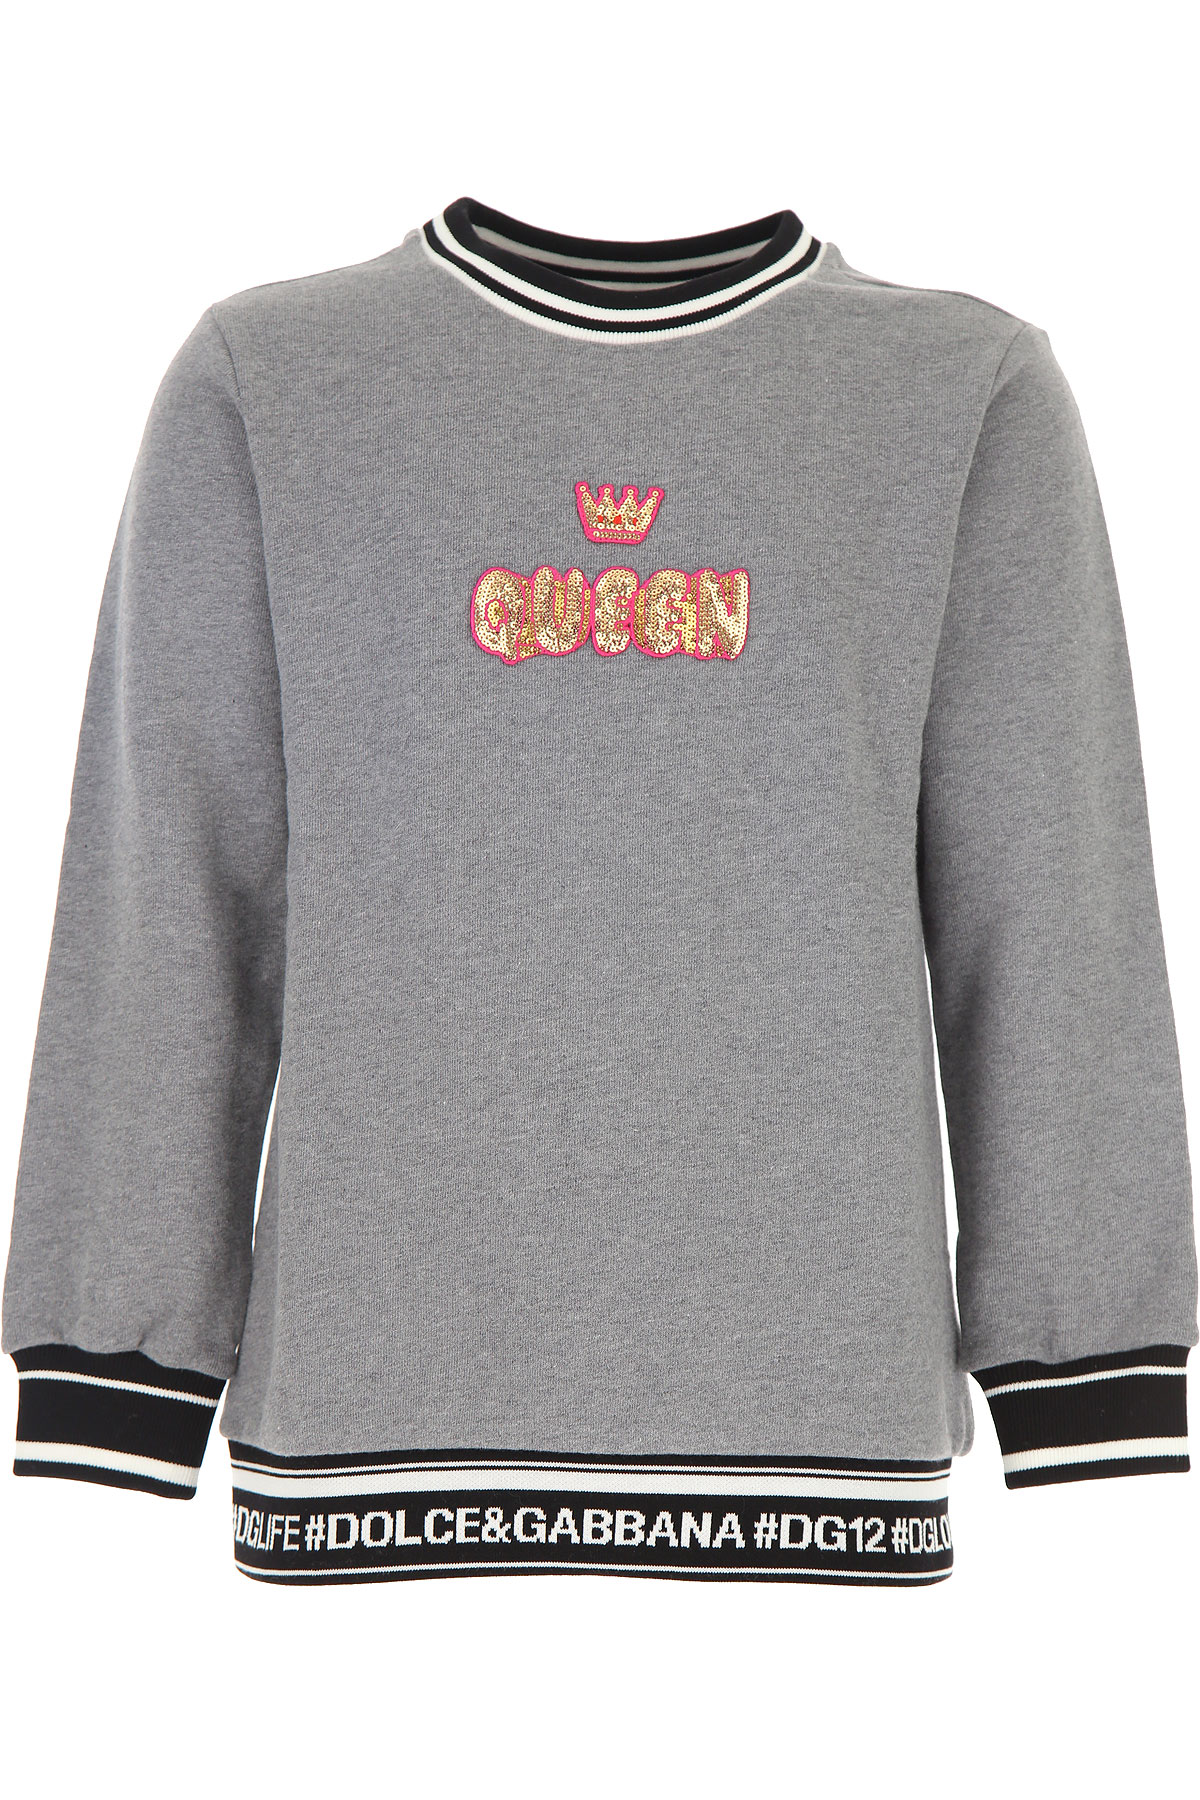 Dolce & Gabbana Kinder Sweatshirt & Kapuzenpullover für Mädchen Günstig im Outlet Sale, Grau, Baumwolle, 2017, 10Y 6Y